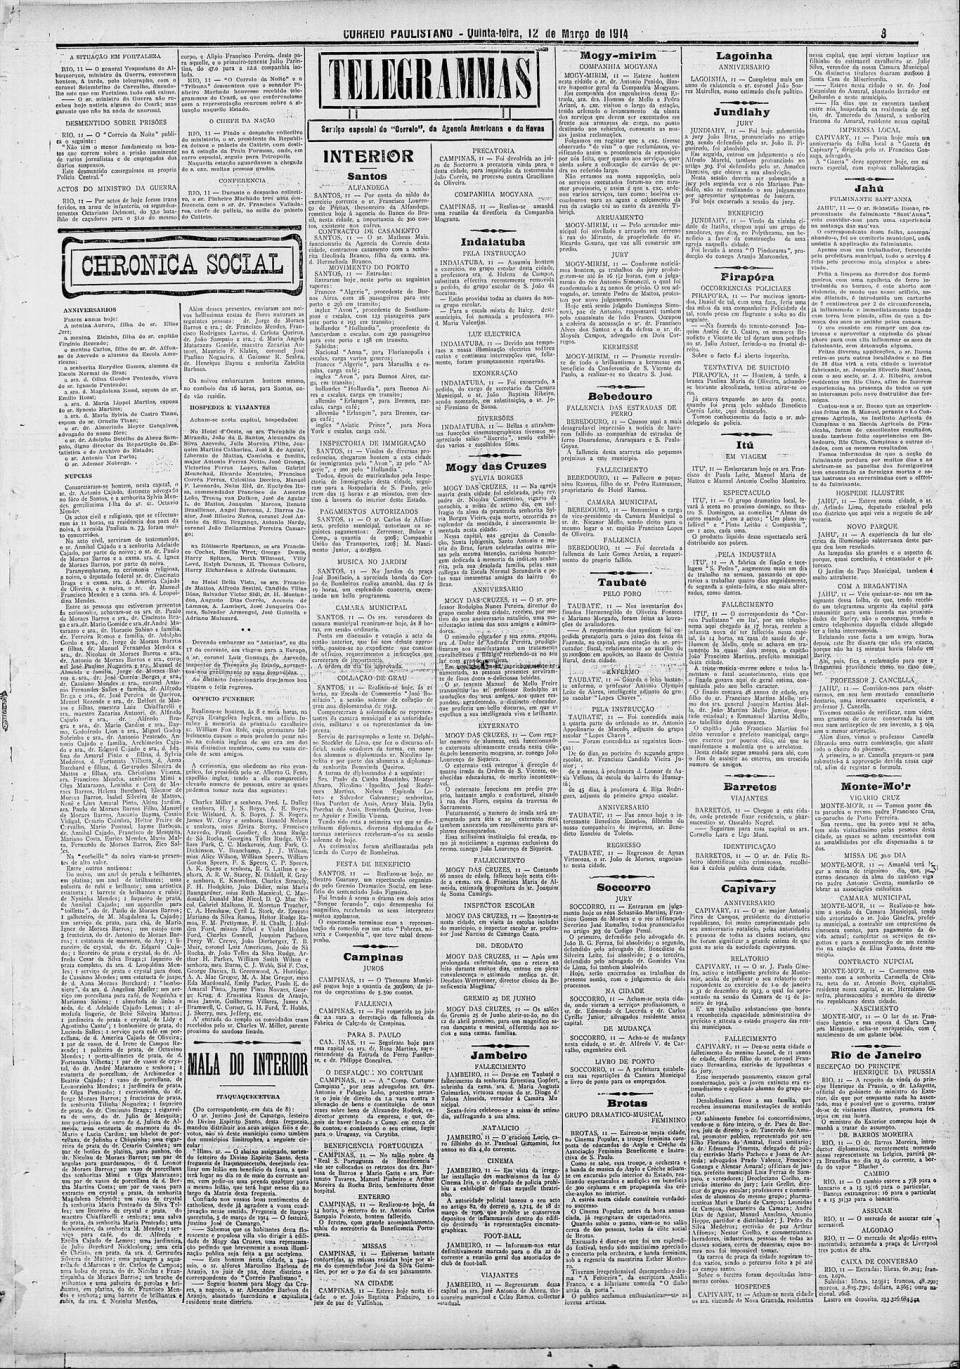 art-bebedouro-falencia-de-luiz-gomes-areias-12-march-1914-correio-paulistano-folha